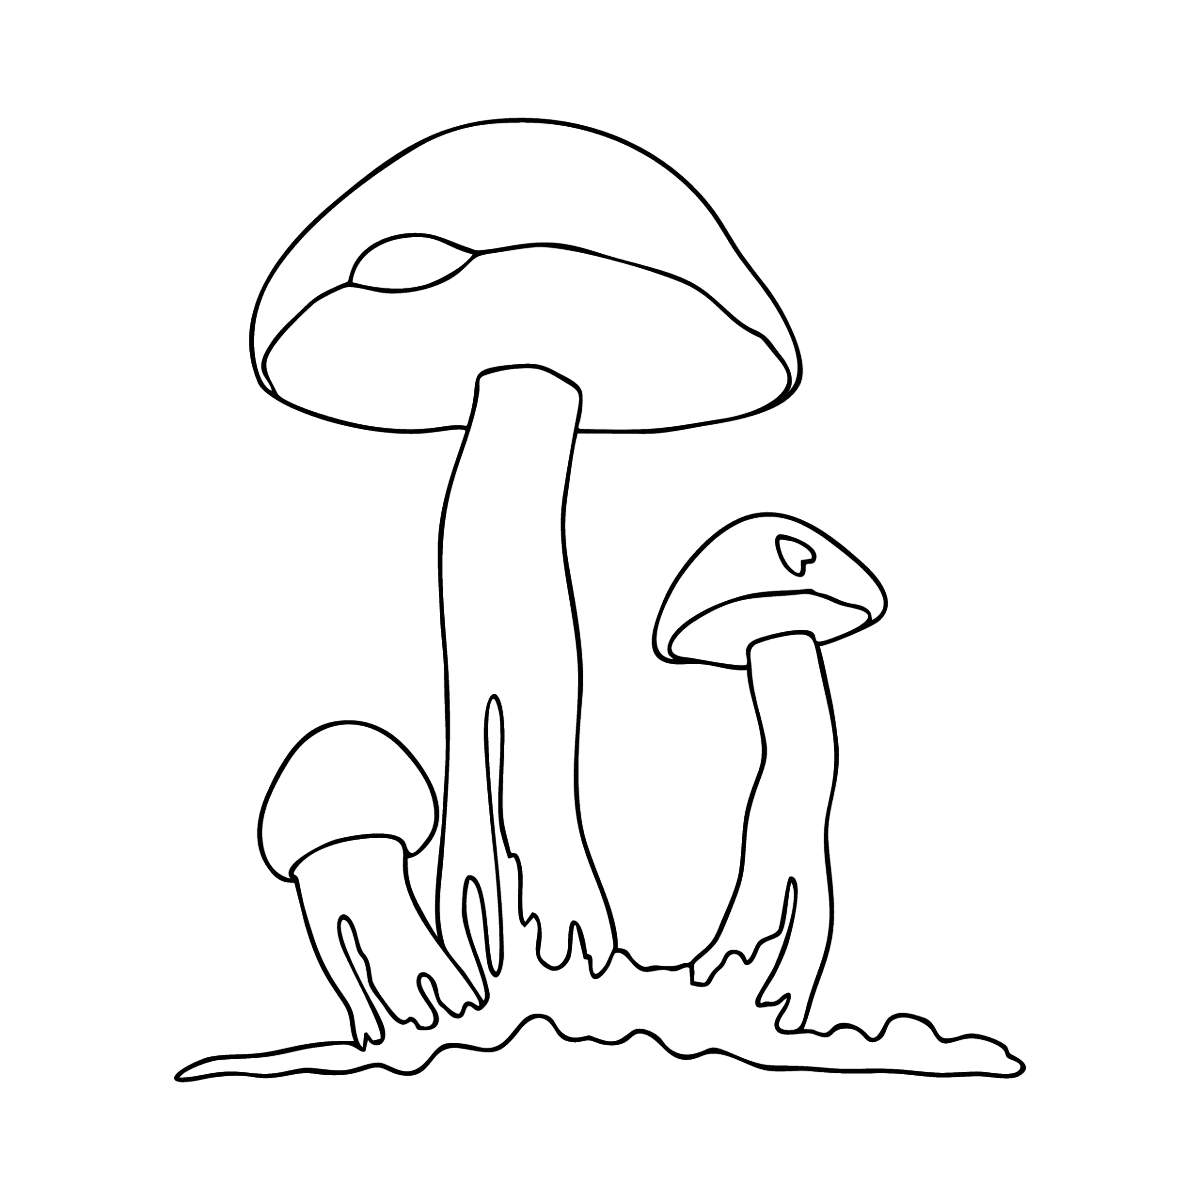 Как нарисовать подберезовик грибы | Раскраски, Рисунки, Грибы